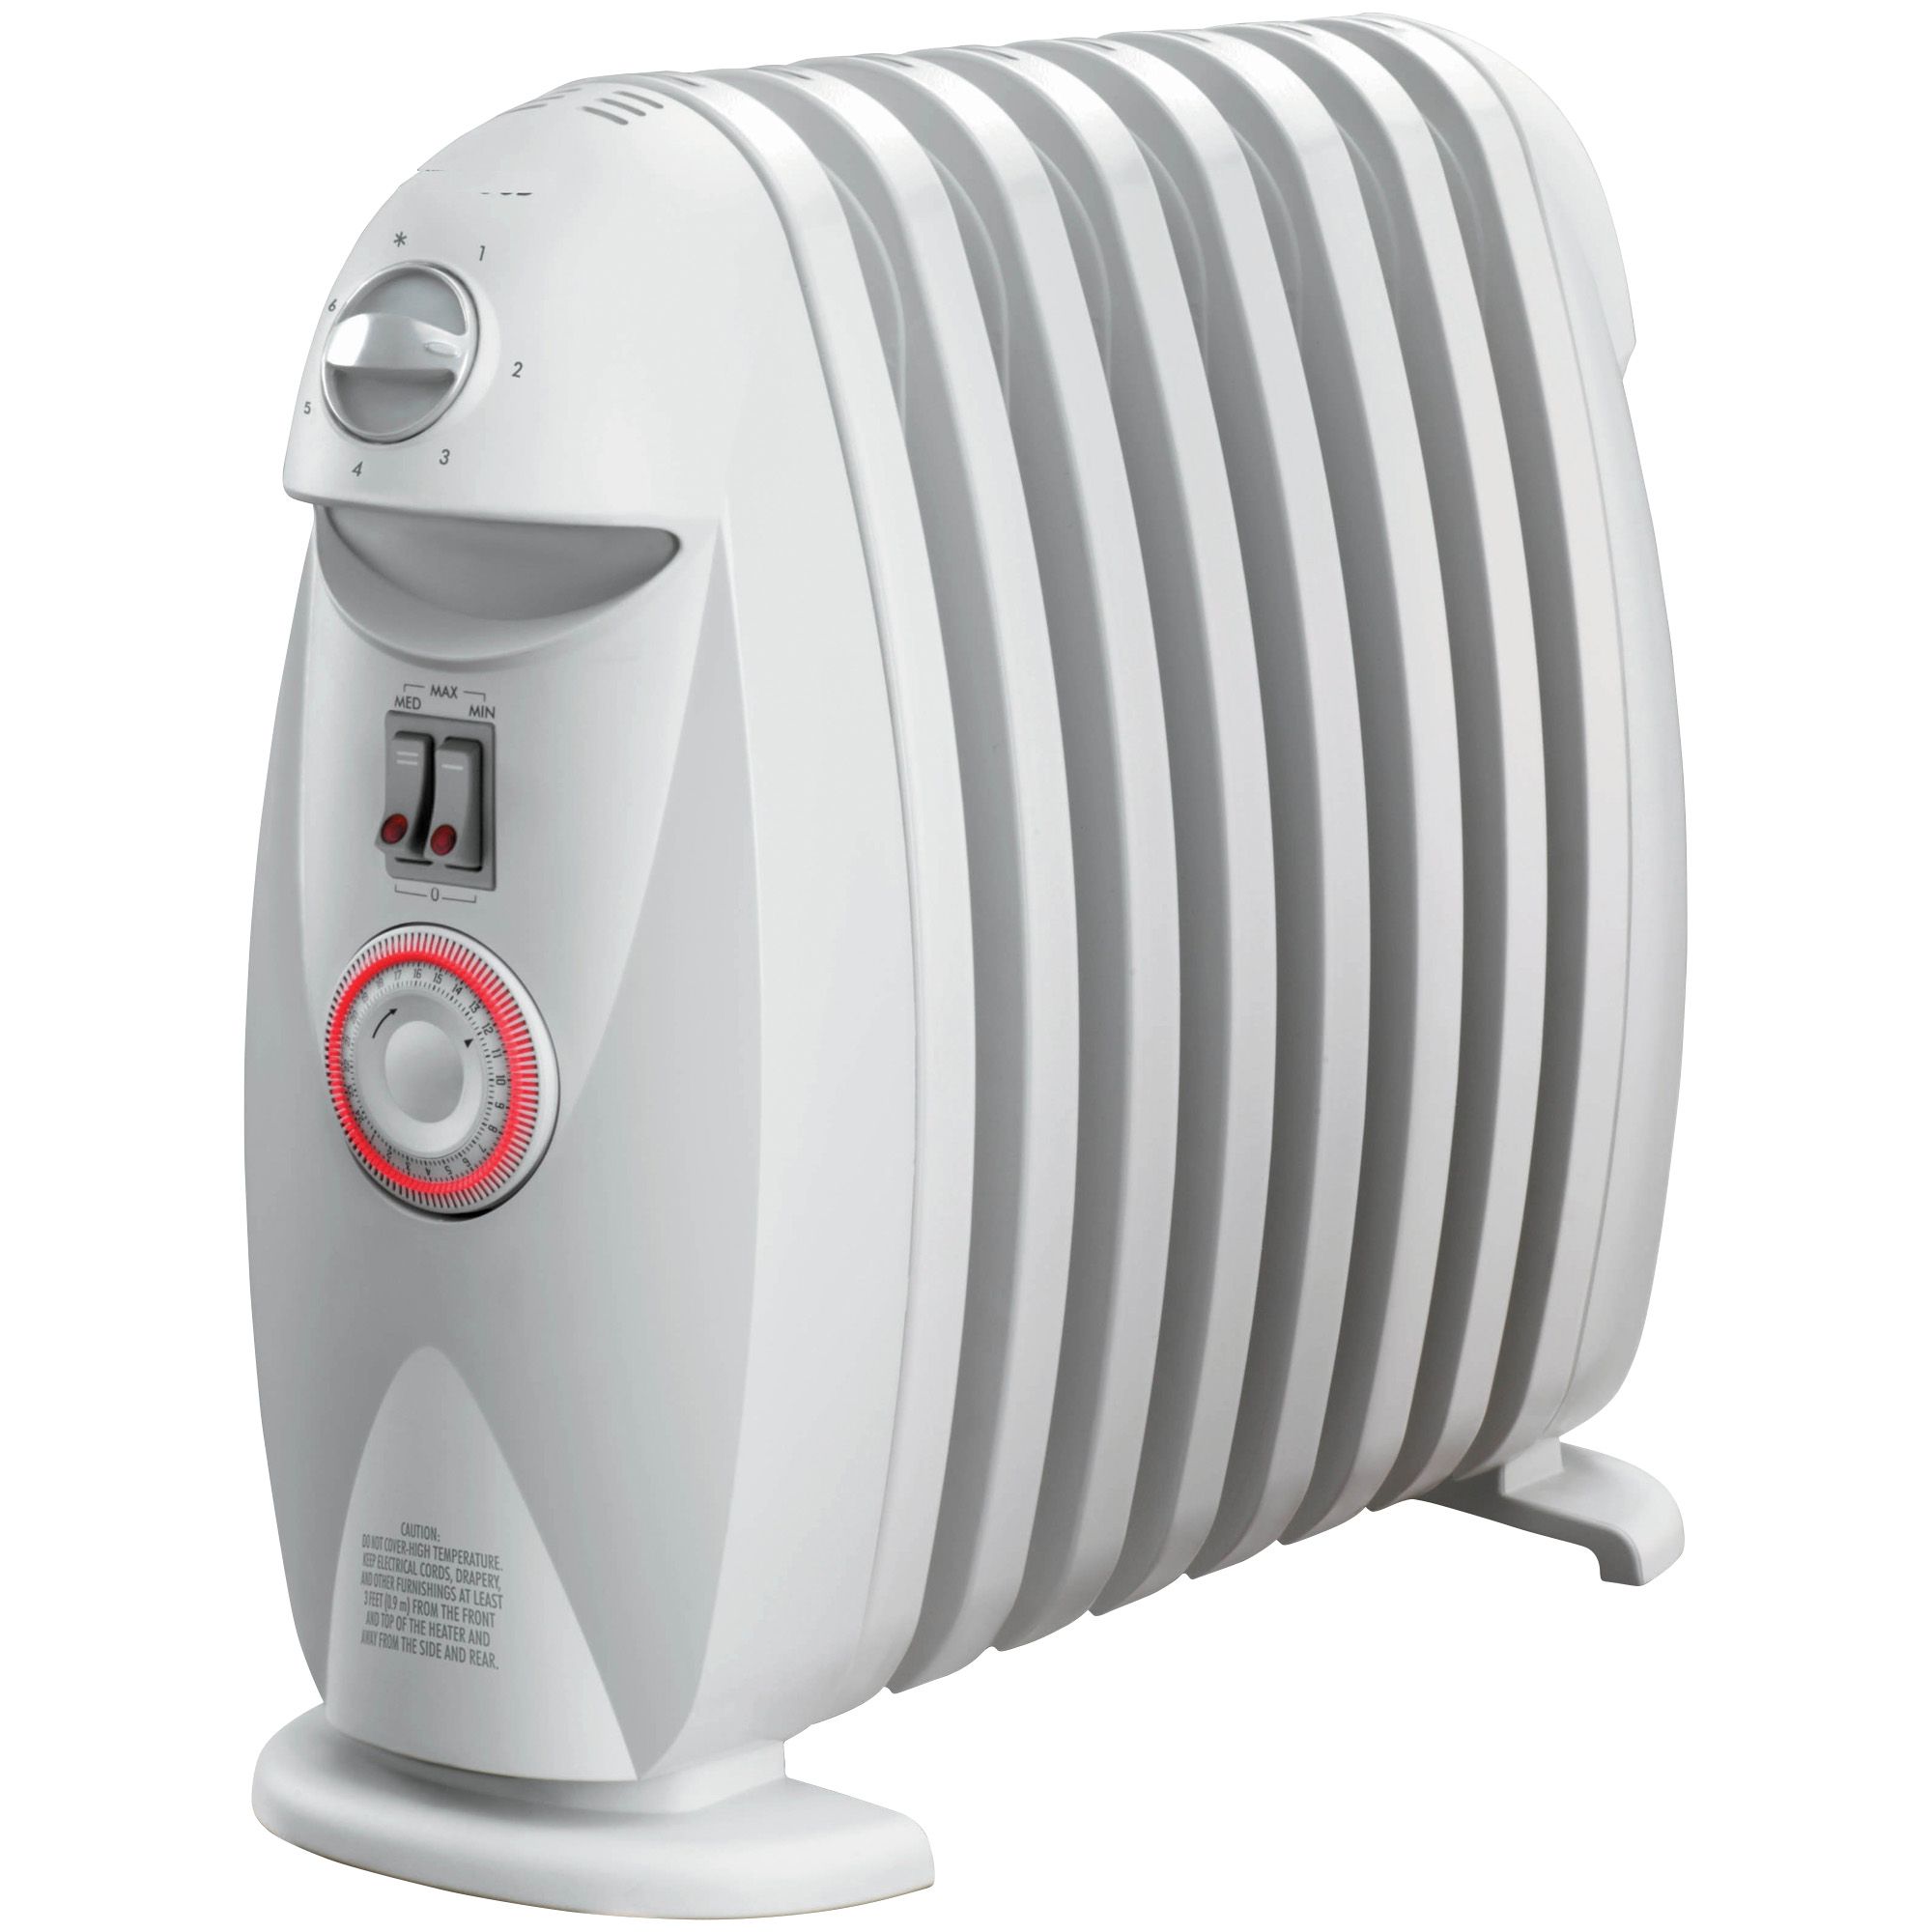 DeLonghi Bathroom-Safe 1200-Watt Oil-Filled Radiator Heater